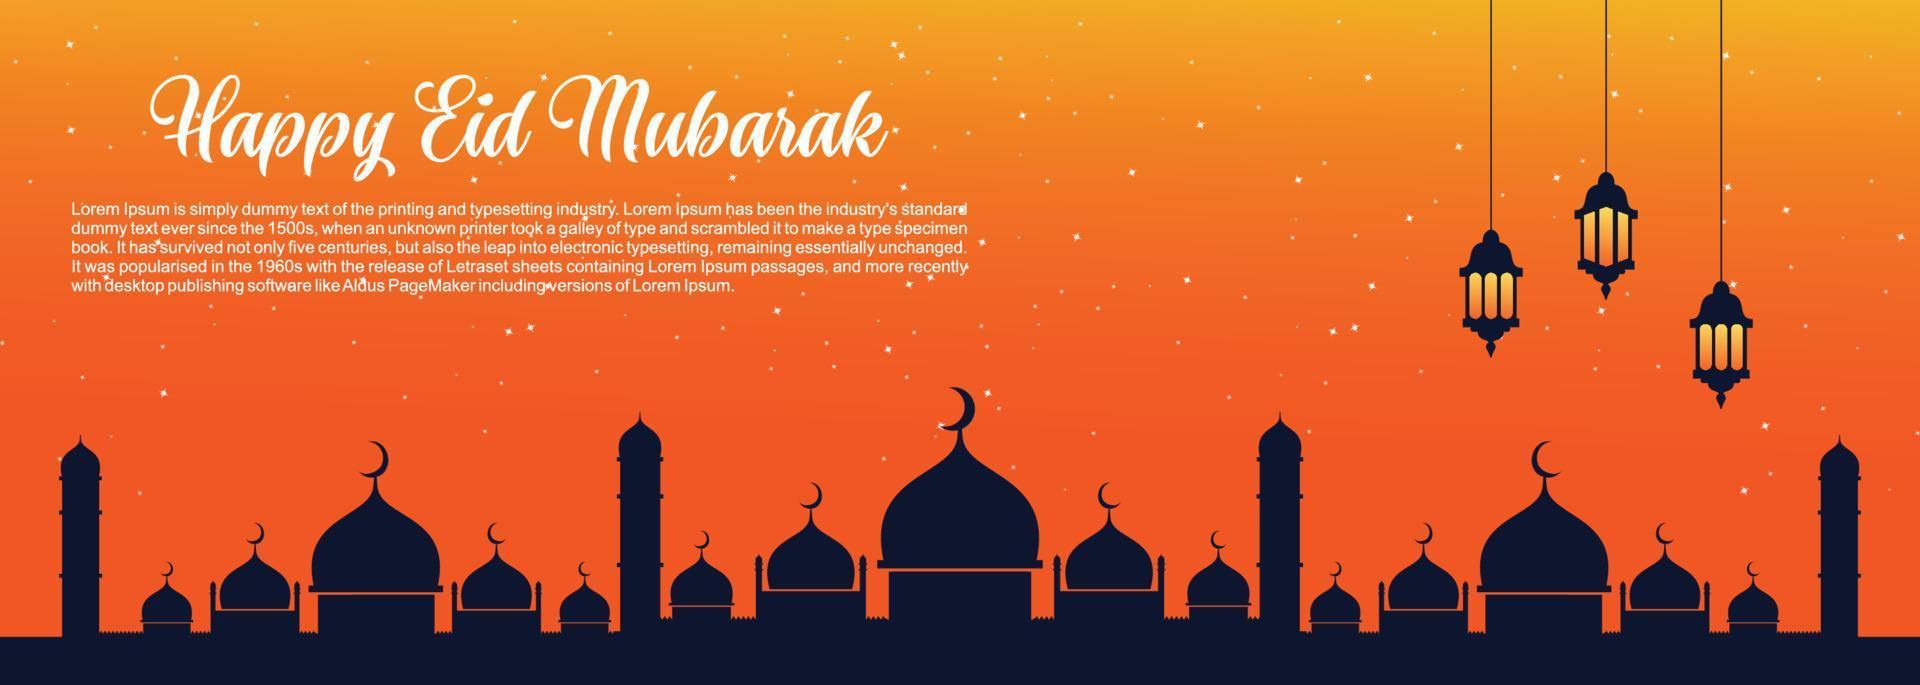 eid mubarak fondo islámico, feliz eid mubarak banner ilustración, tarjeta de felicitación islámica religión celebración musulmana. caligrafía árabe moderna vector